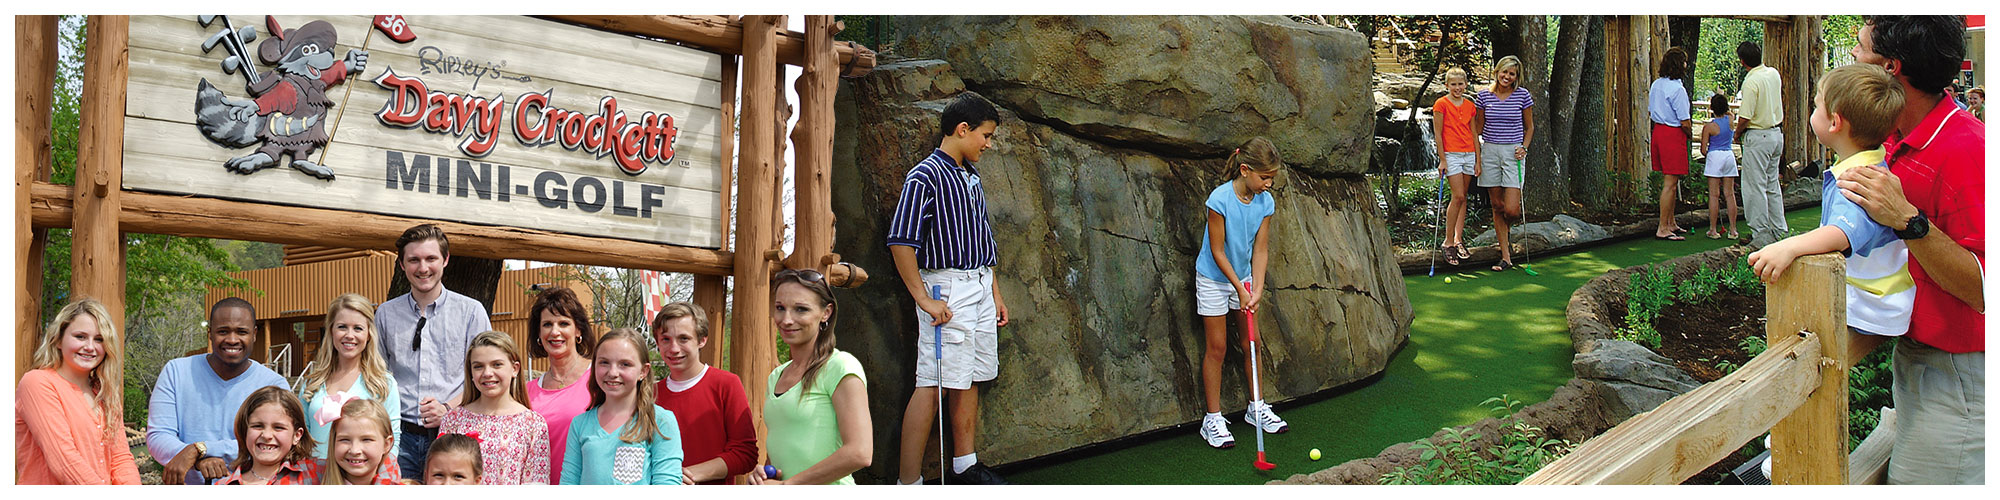 Ripley's Davy Crockett Mini-Golf (Header Background) | Gatlinburg Attractions